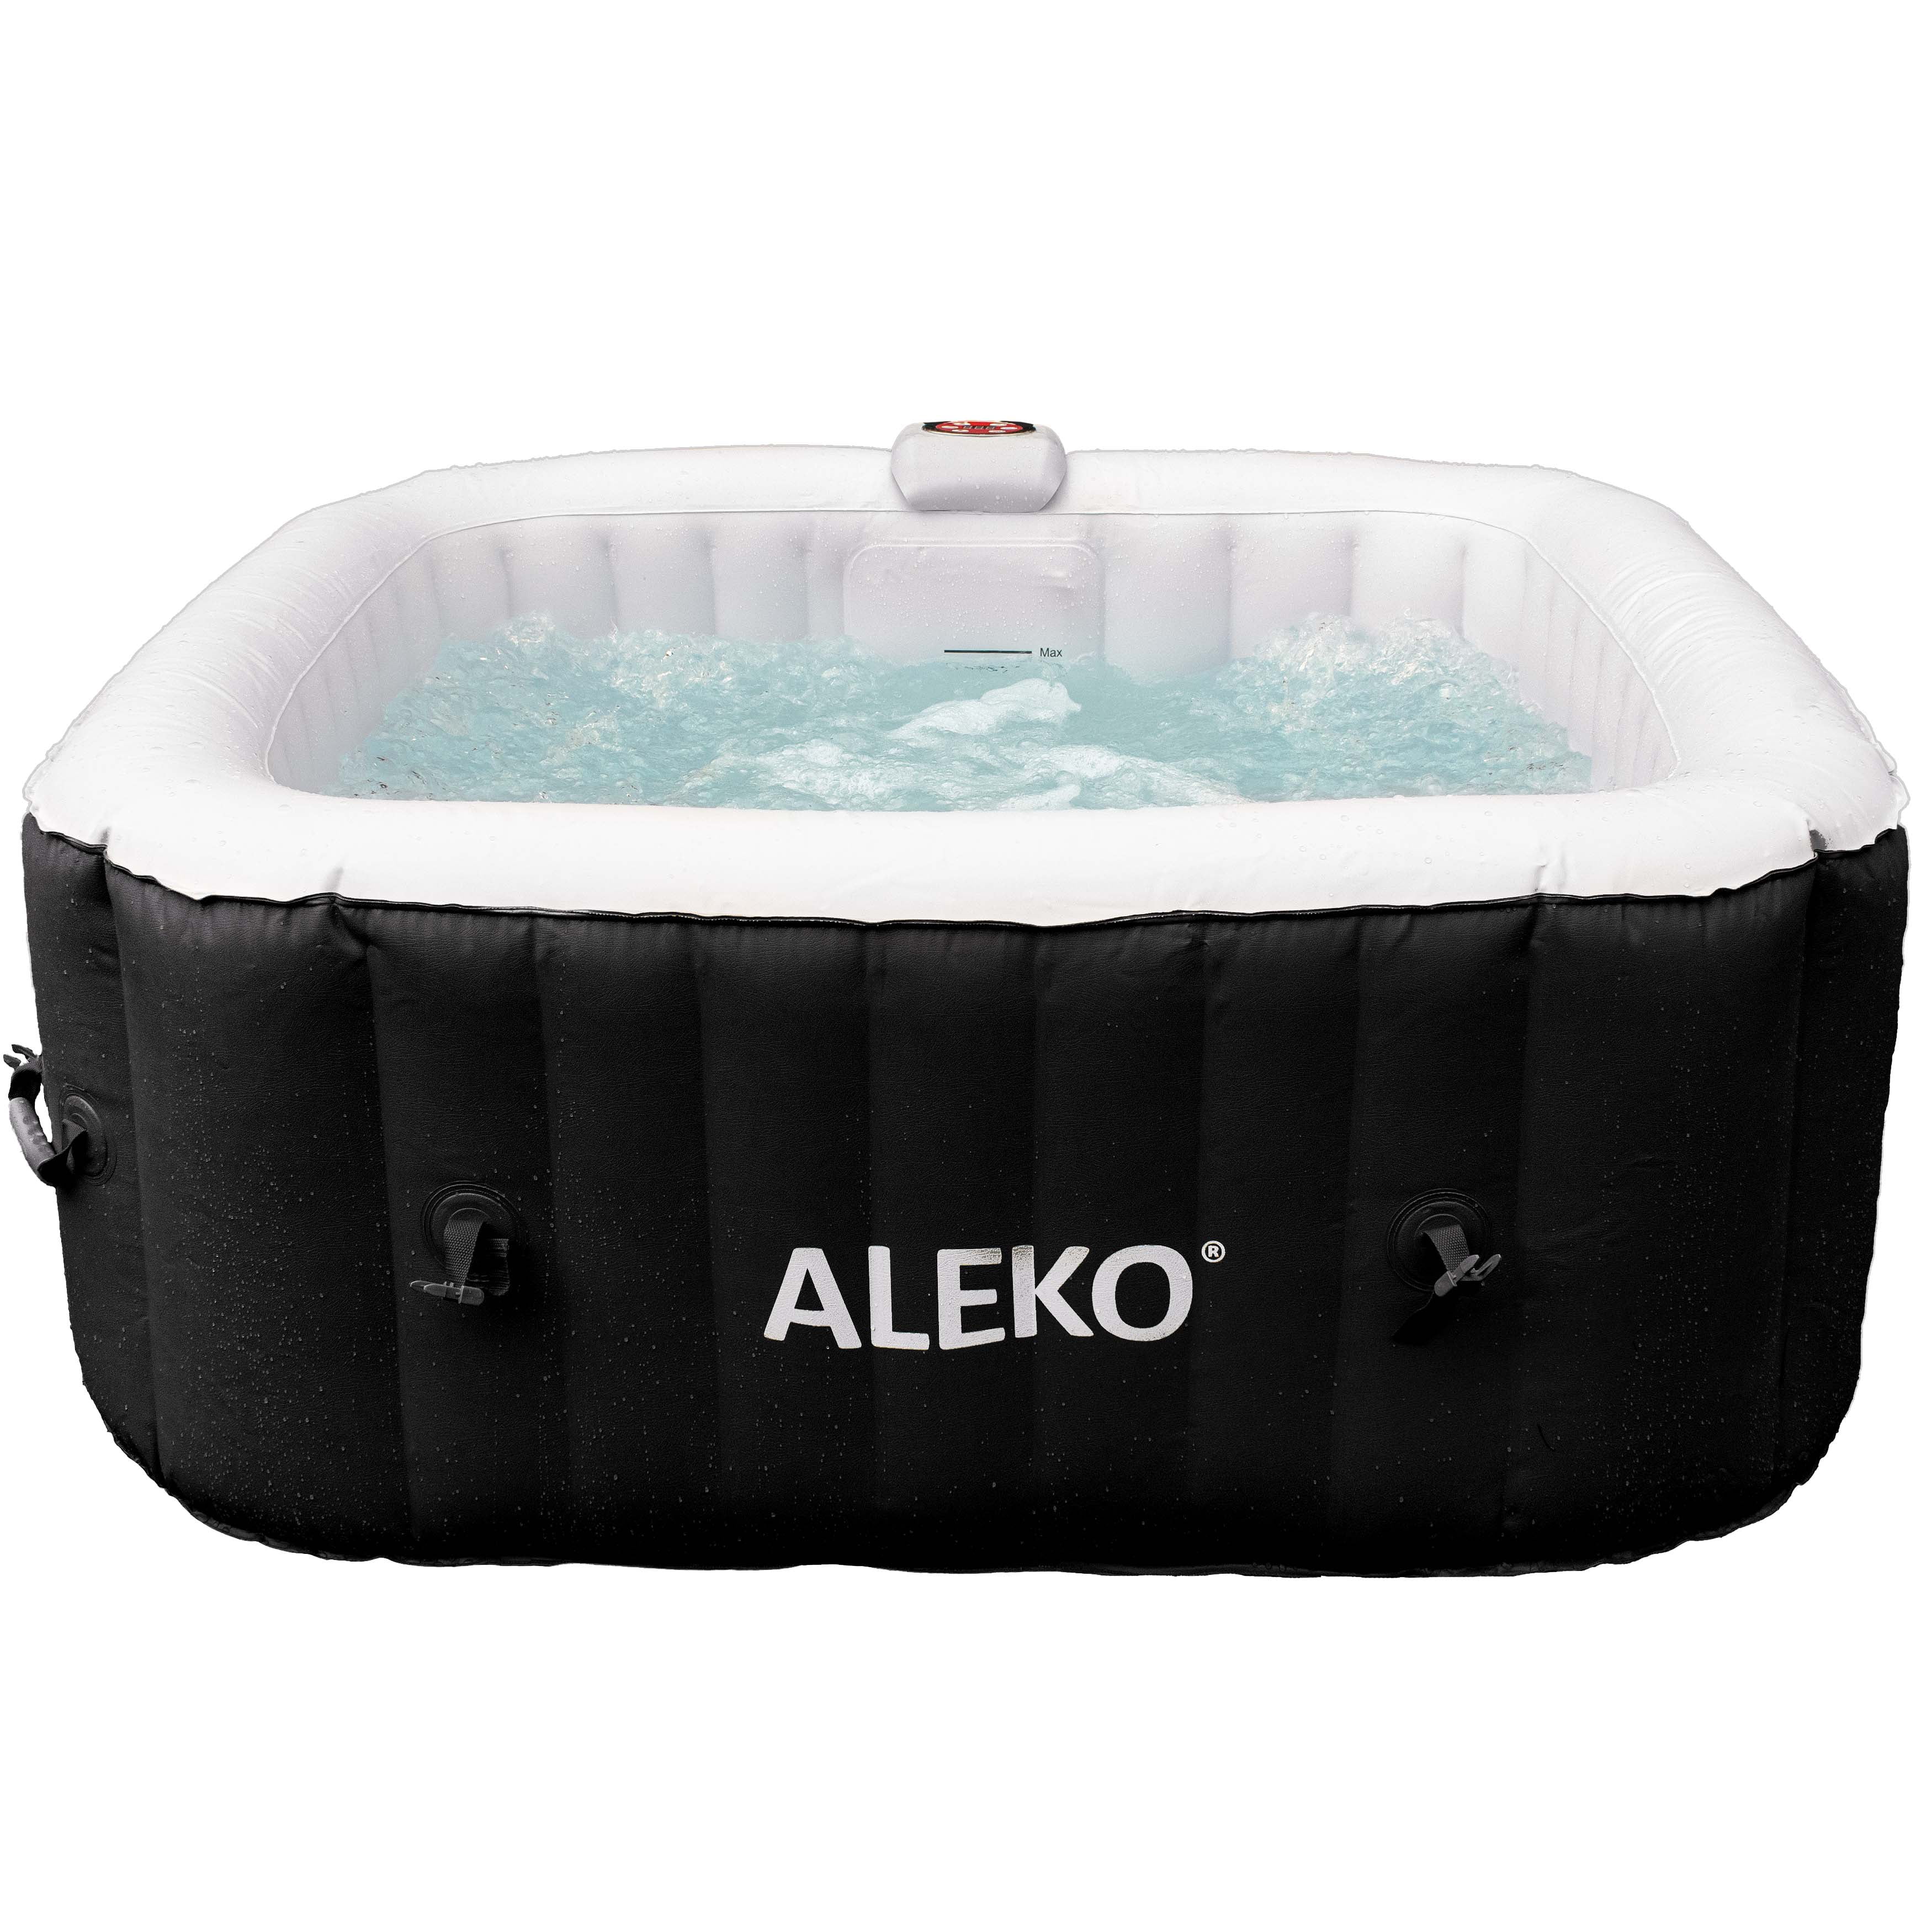 Vaag fluctueren onderwijs ALEKO 4 Person 130 Jet Outdoor Inflatable Hot Tub - Walmart.com